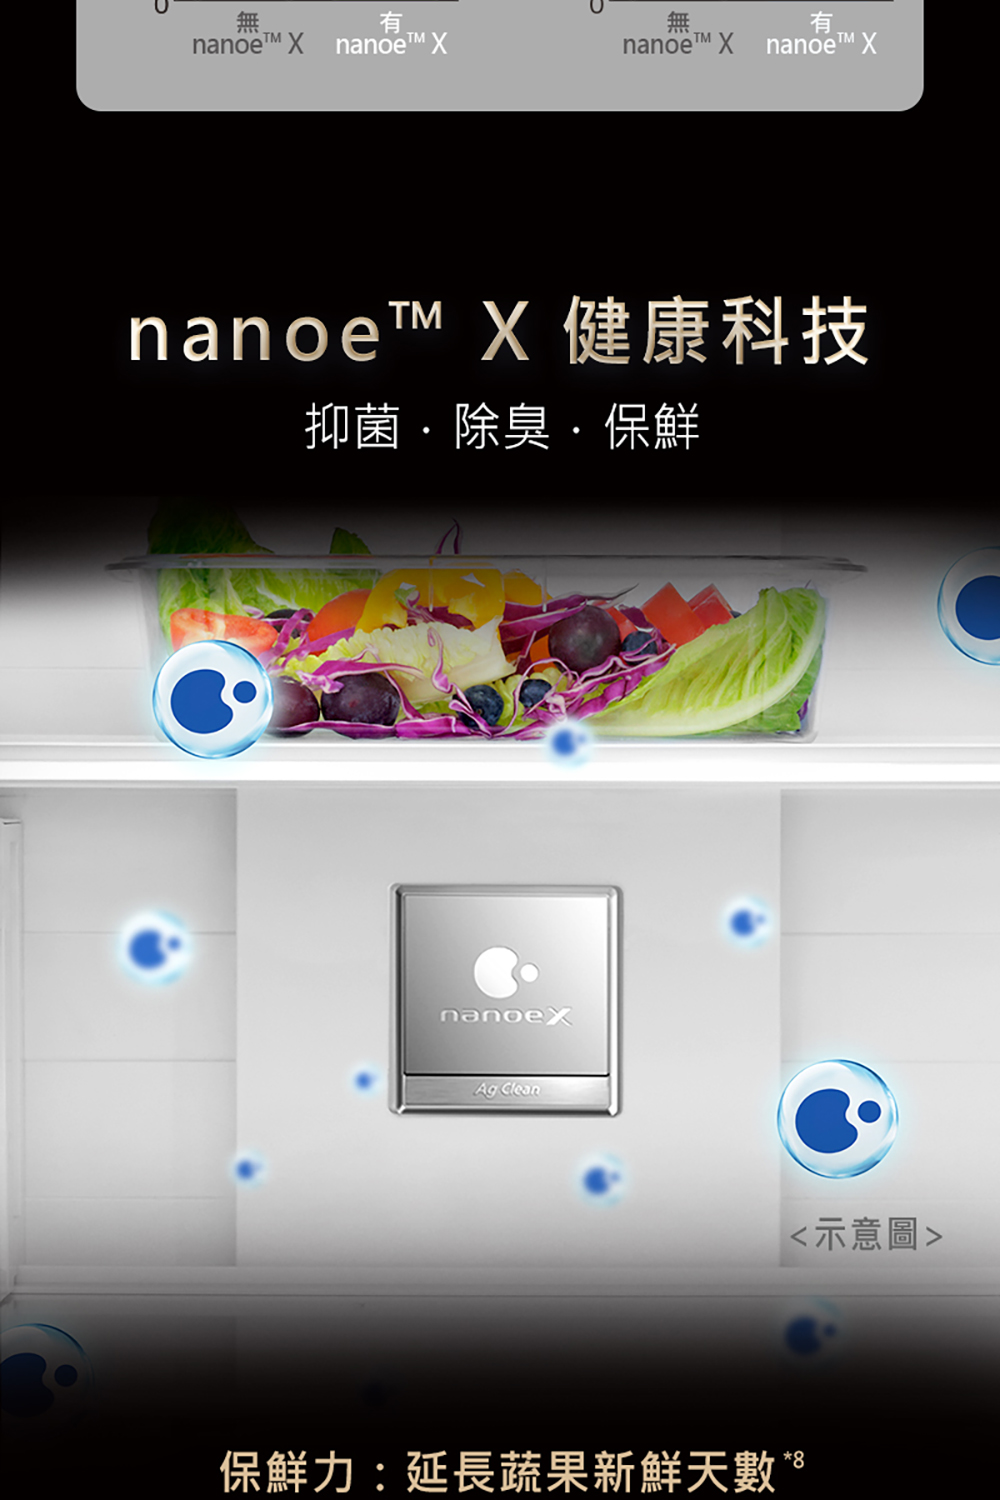 nanoe X 健康科技 抑菌.除臭.保鮮 示意圖 保鮮力延長蔬果新鮮天數。 